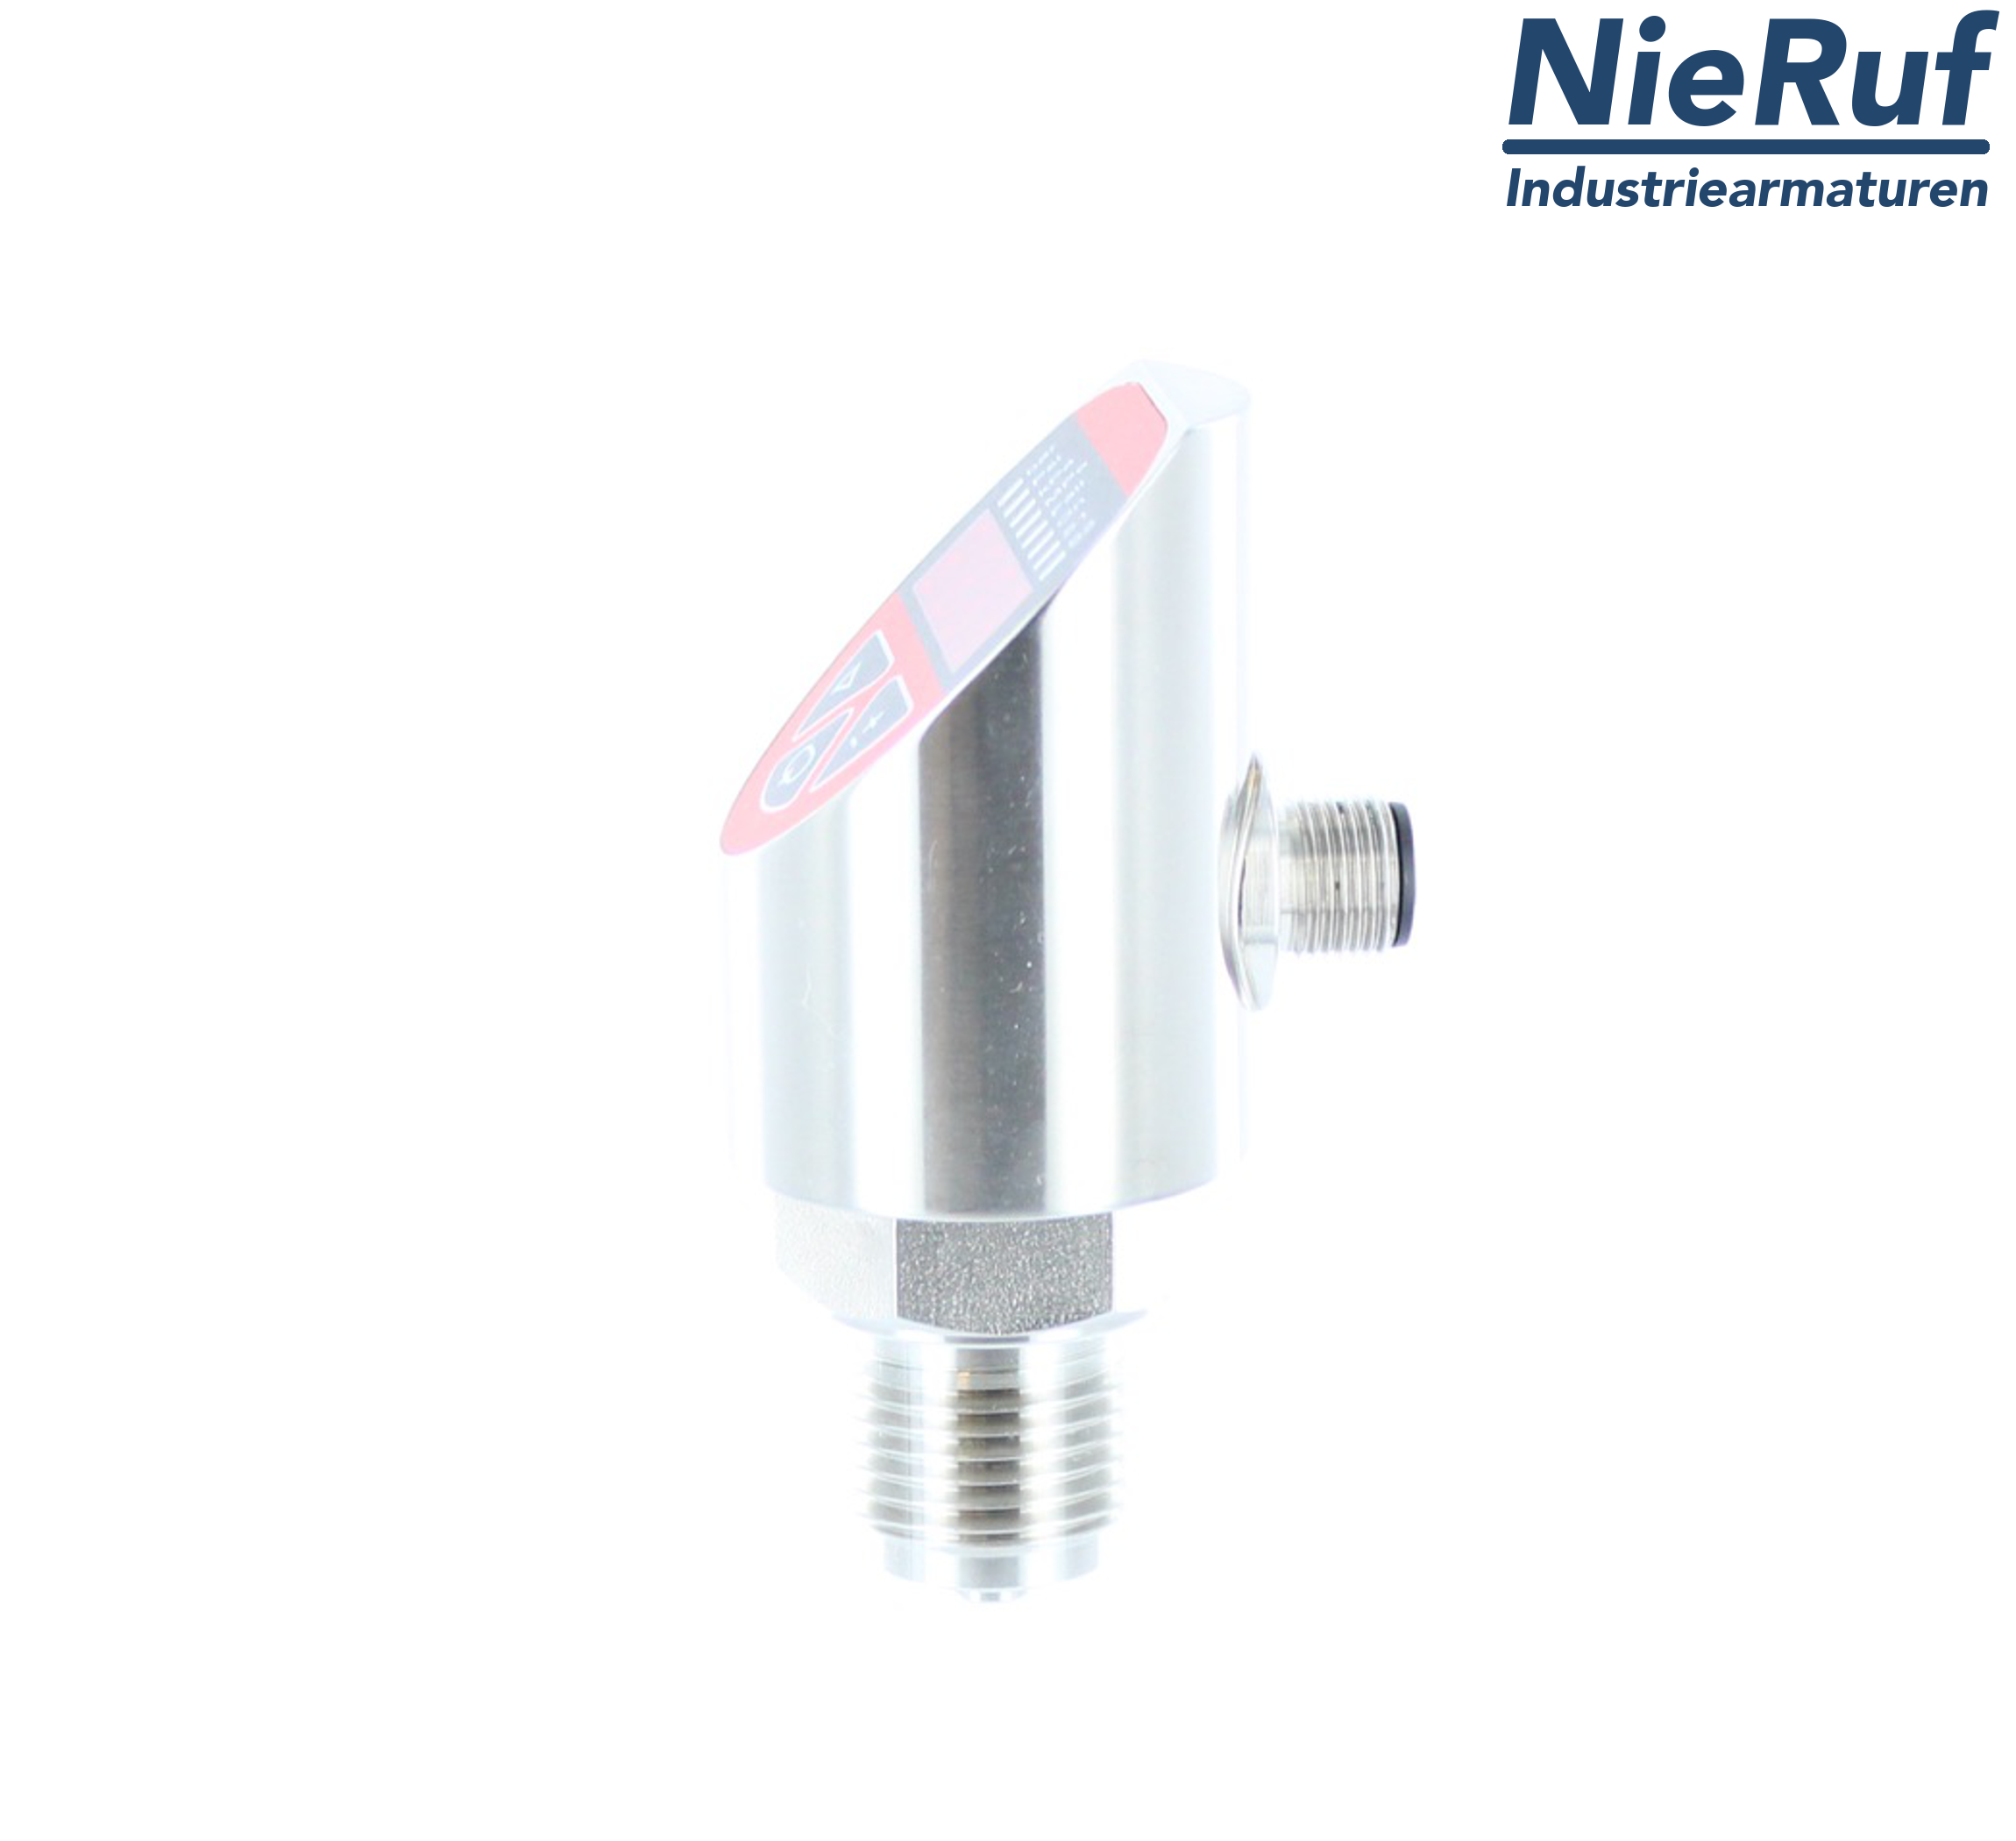 digital pressure sensor G 1/2" B IB   5-wire: 2xPNP, 1x4 - 20mA EPDM 0,0 - 4,0 bar